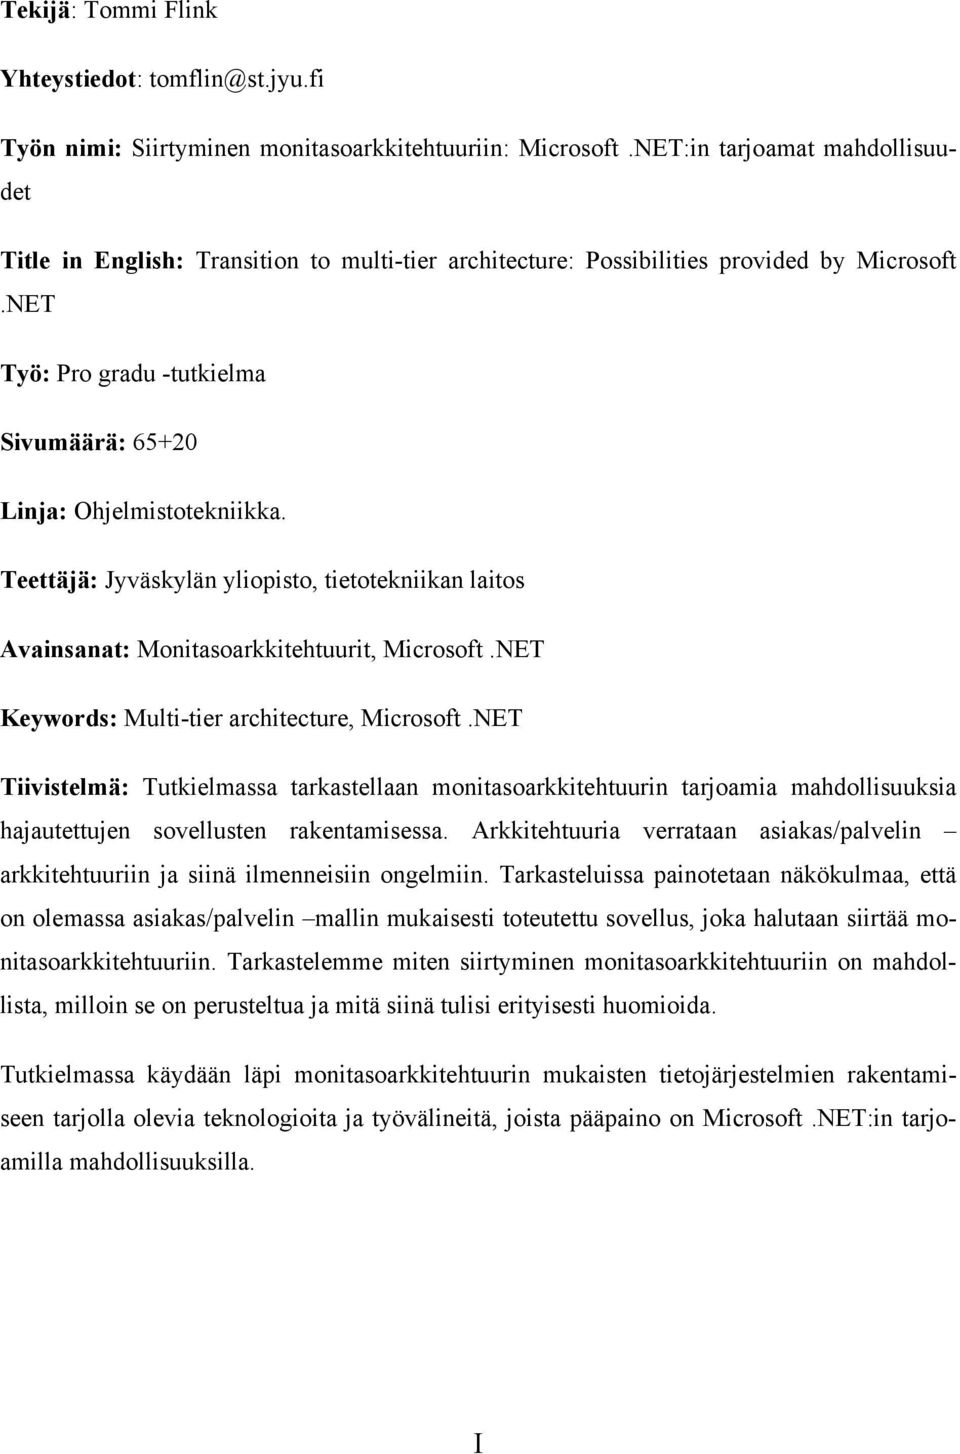 Teettäjä: Jyväskylän yliopisto, tietotekniikan laitos Avainsanat: Monitasoarkkitehtuurit, Microsoft.NET Keywords: Multi-tier architecture, Microsoft.